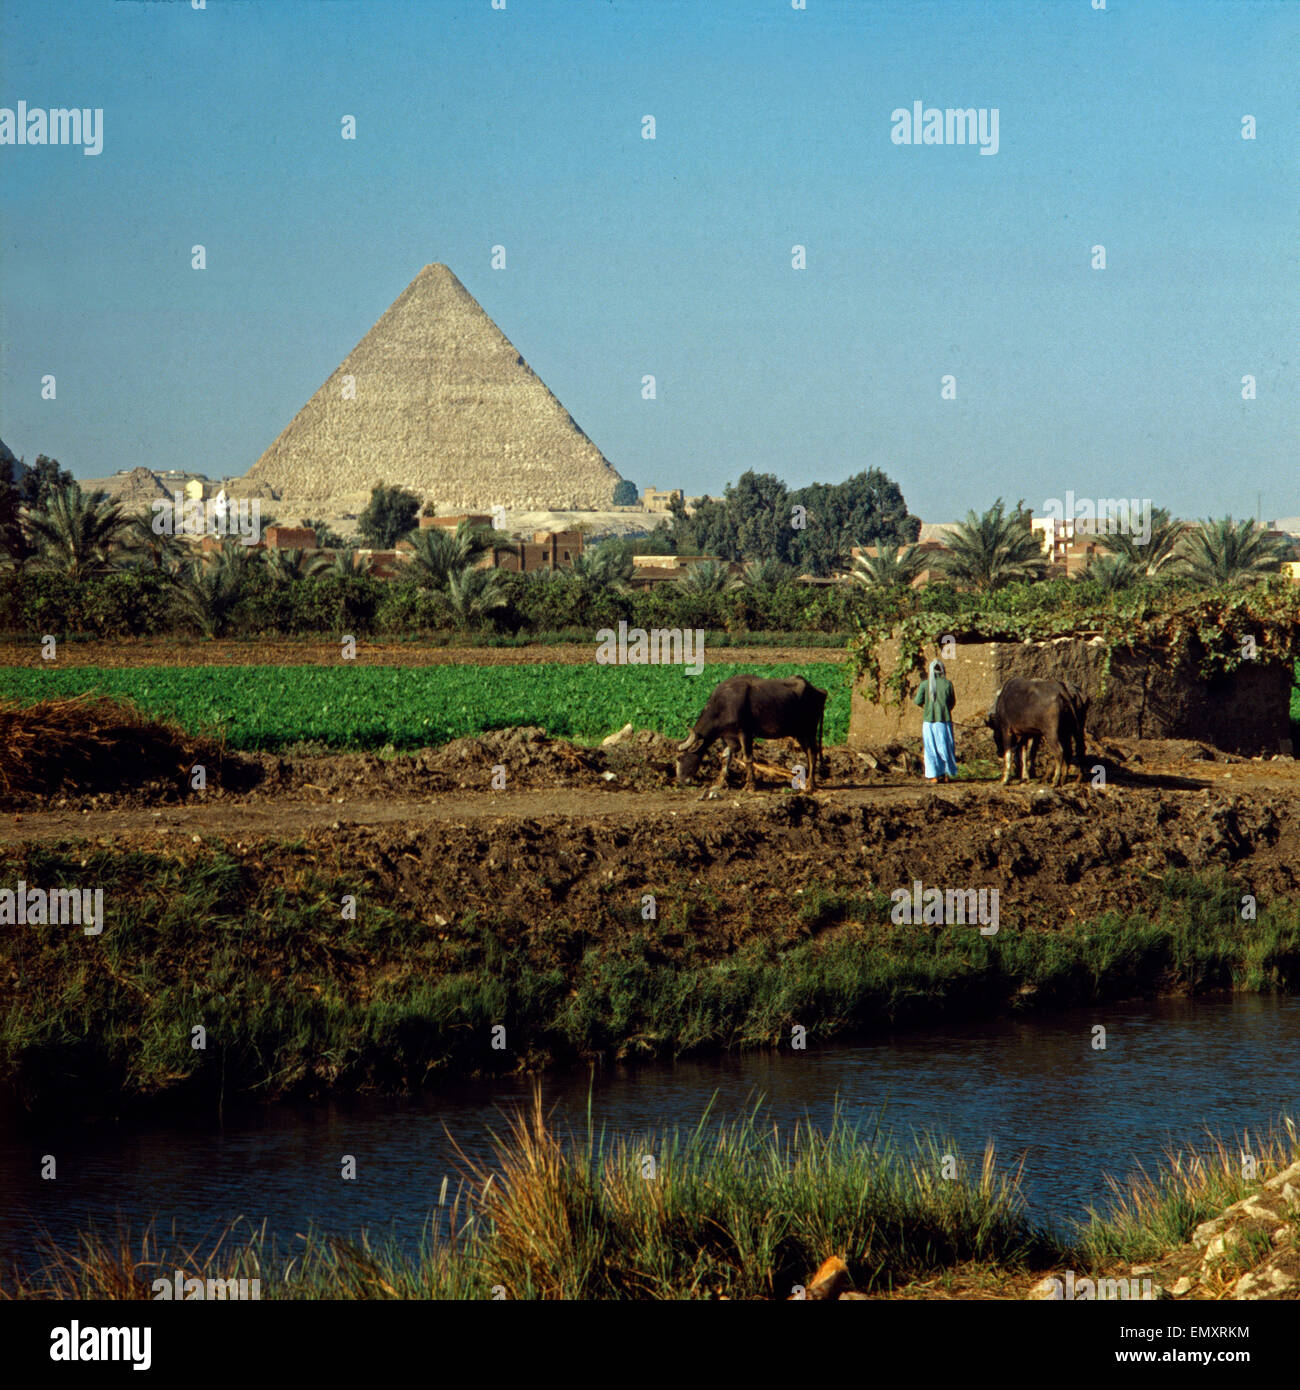 Hinter einem Nilkanal und fruchtbarem Ackerland erhebt sich die Pyramide des Cheope in Gizeh bei Kairo, Ägypten, Ende 1970er Jah Foto Stock